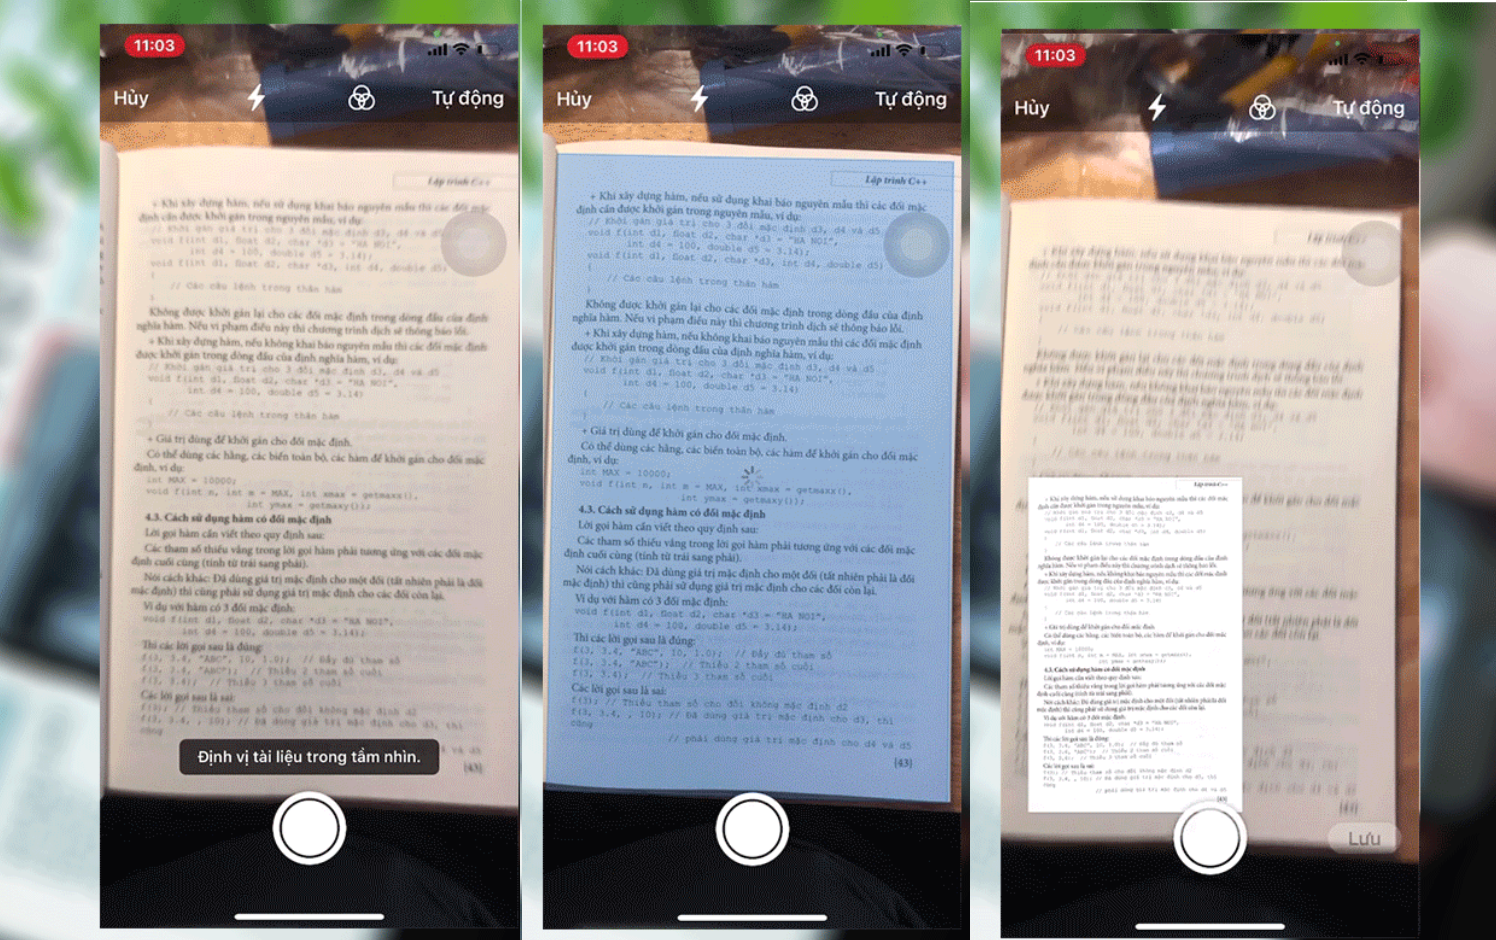 Hướng dẫn cách copy chữ trong ảnh trên iPhone cực kì đơn giản và hiệu quả